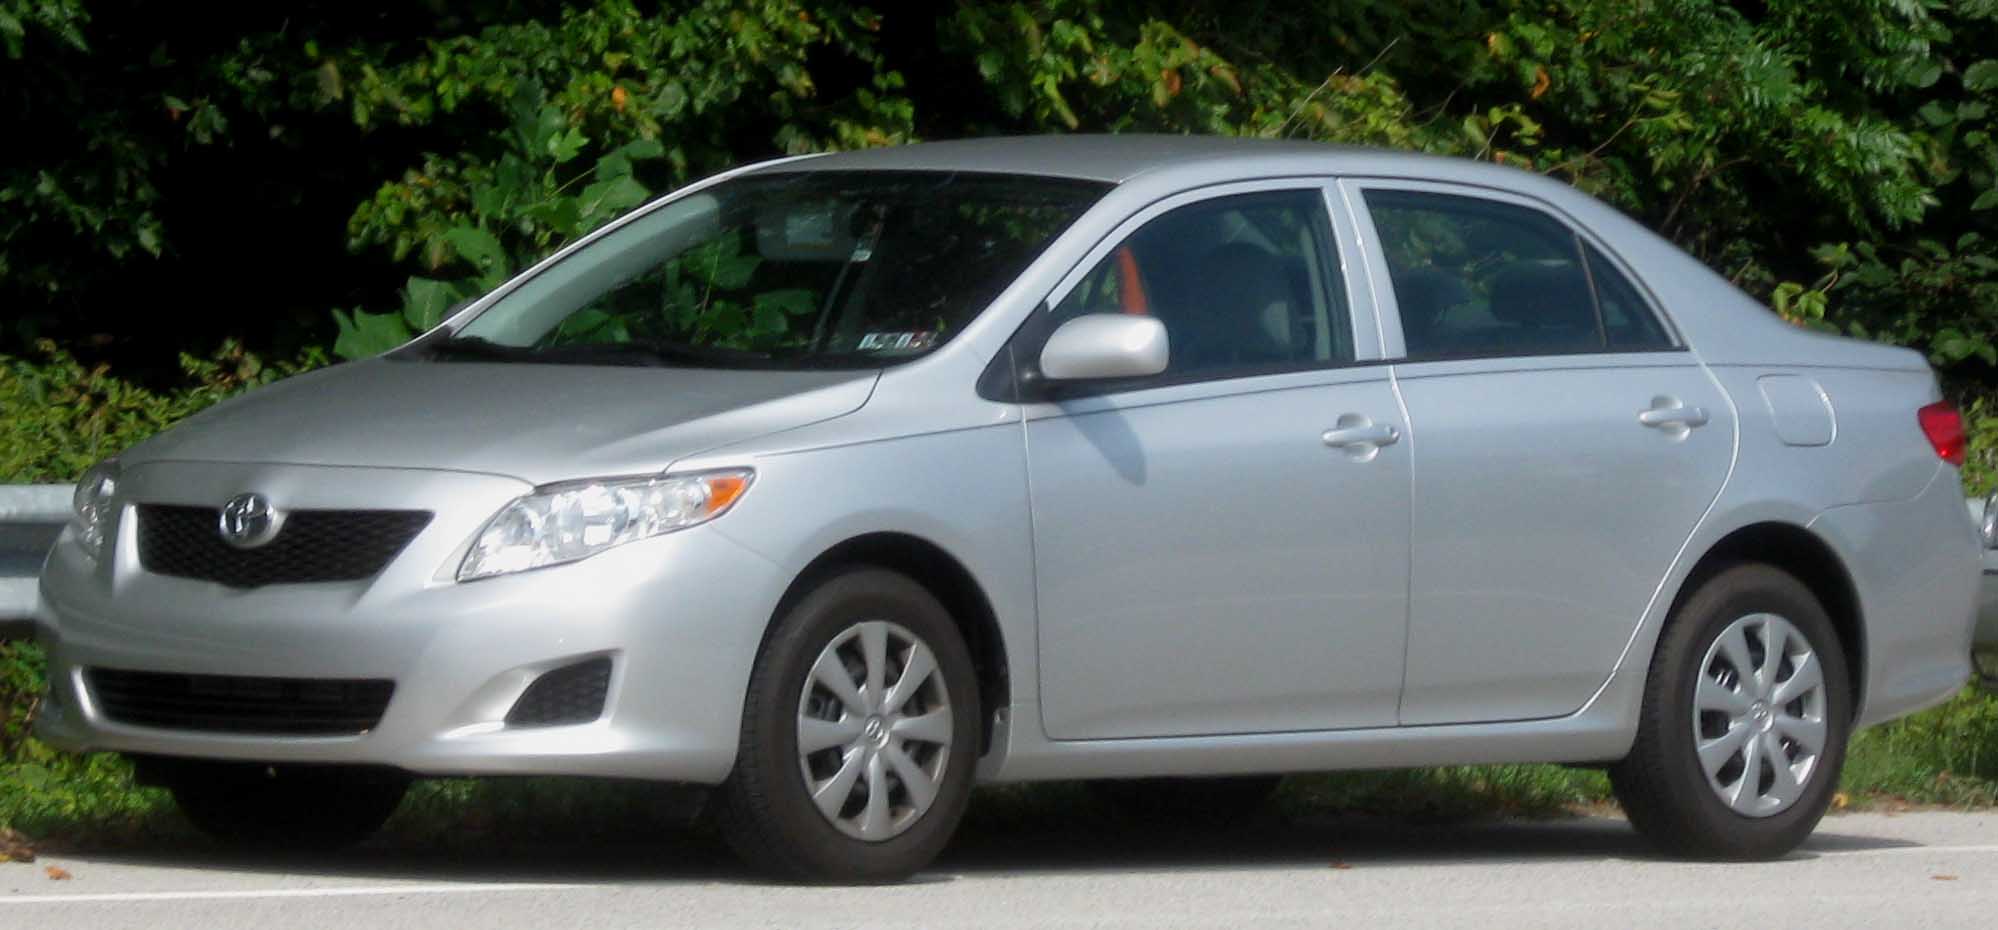 2009 Corolla #1